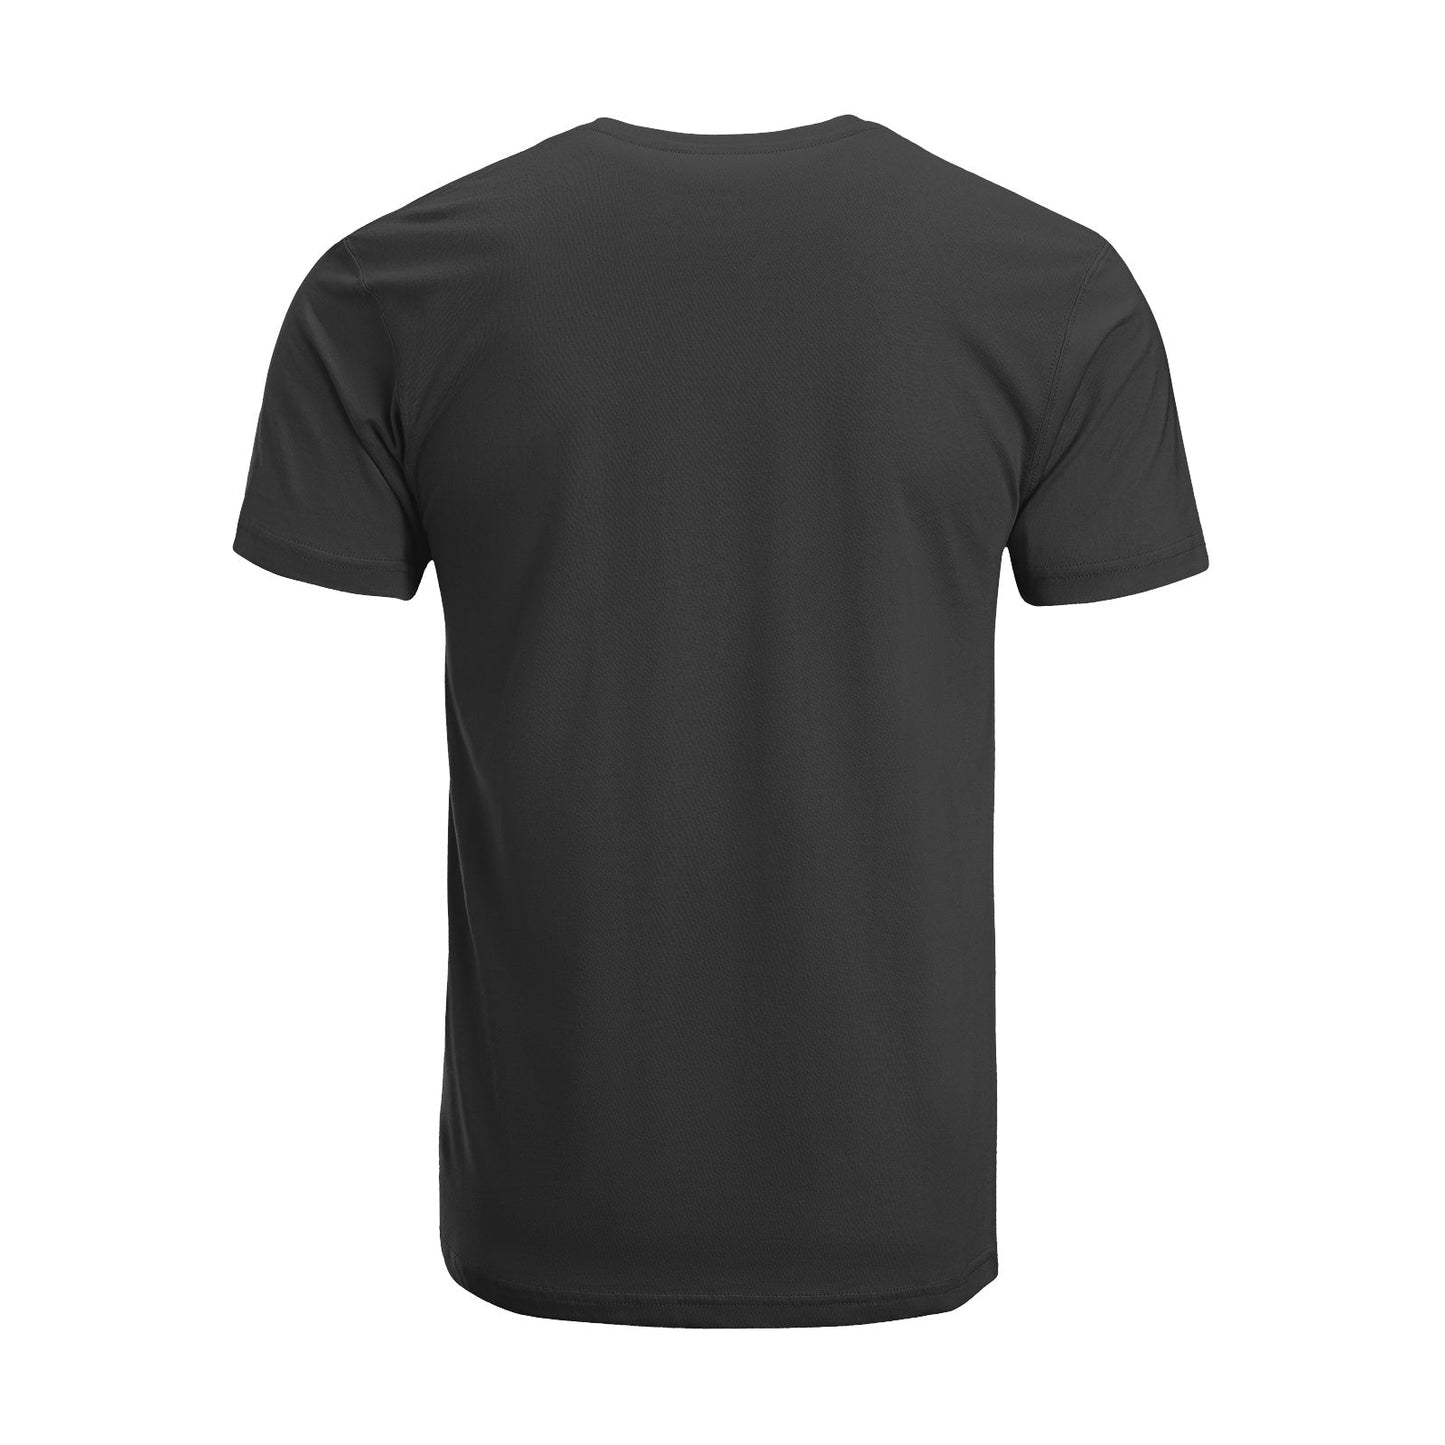 Unisex Short Sleeve Crew Neck Cotton Jersey T-Shirt TRUCK 42